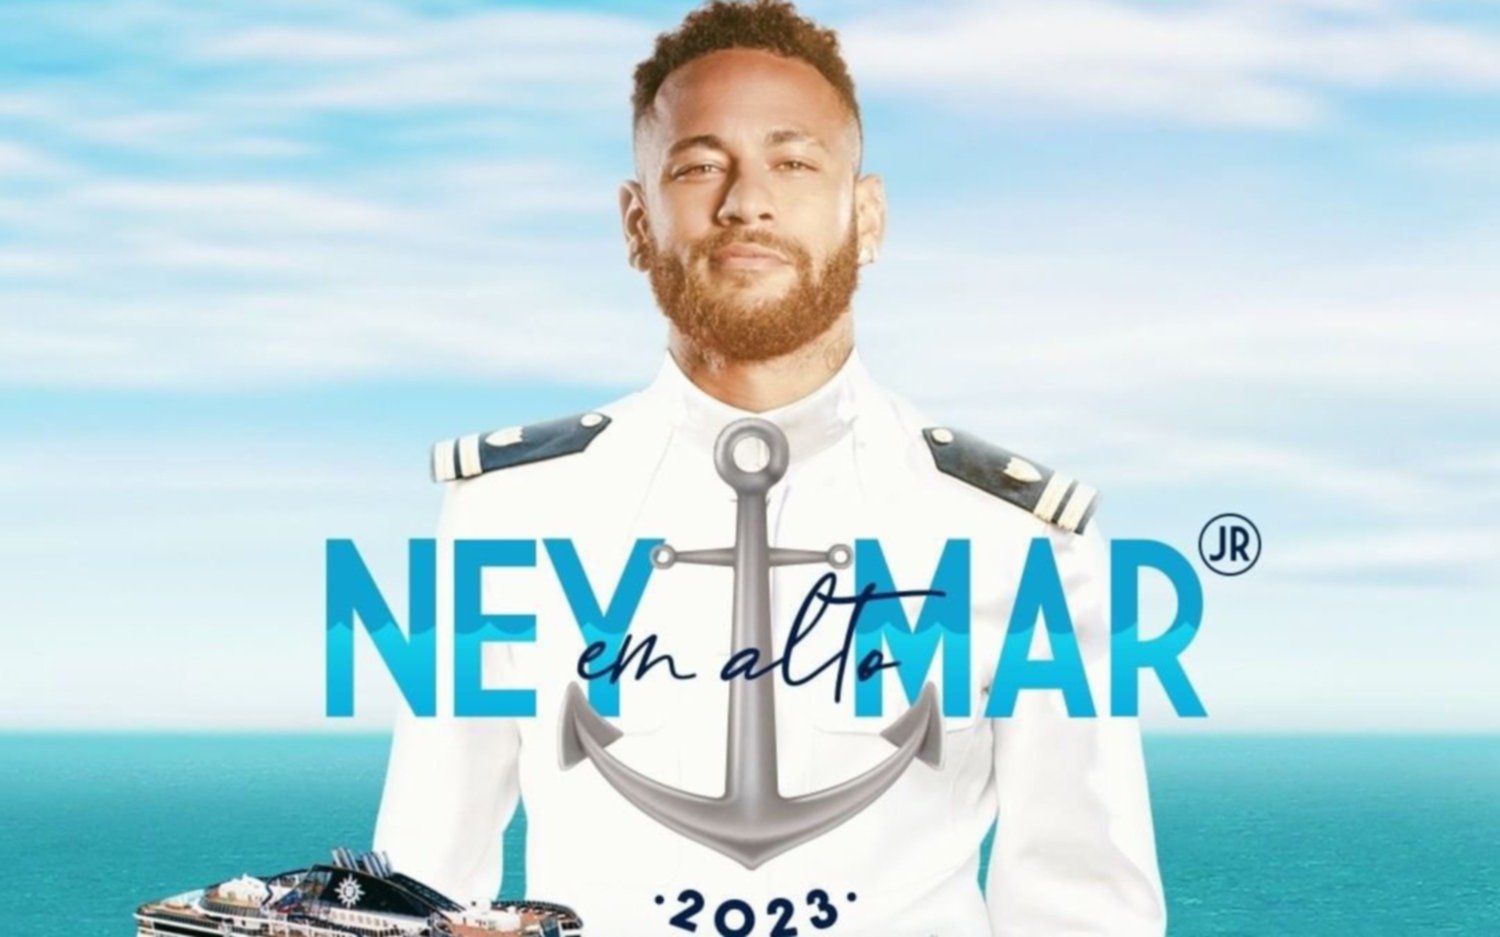 Furor por el nuevo proyecto de Neymar: "Ney en alta Mar"